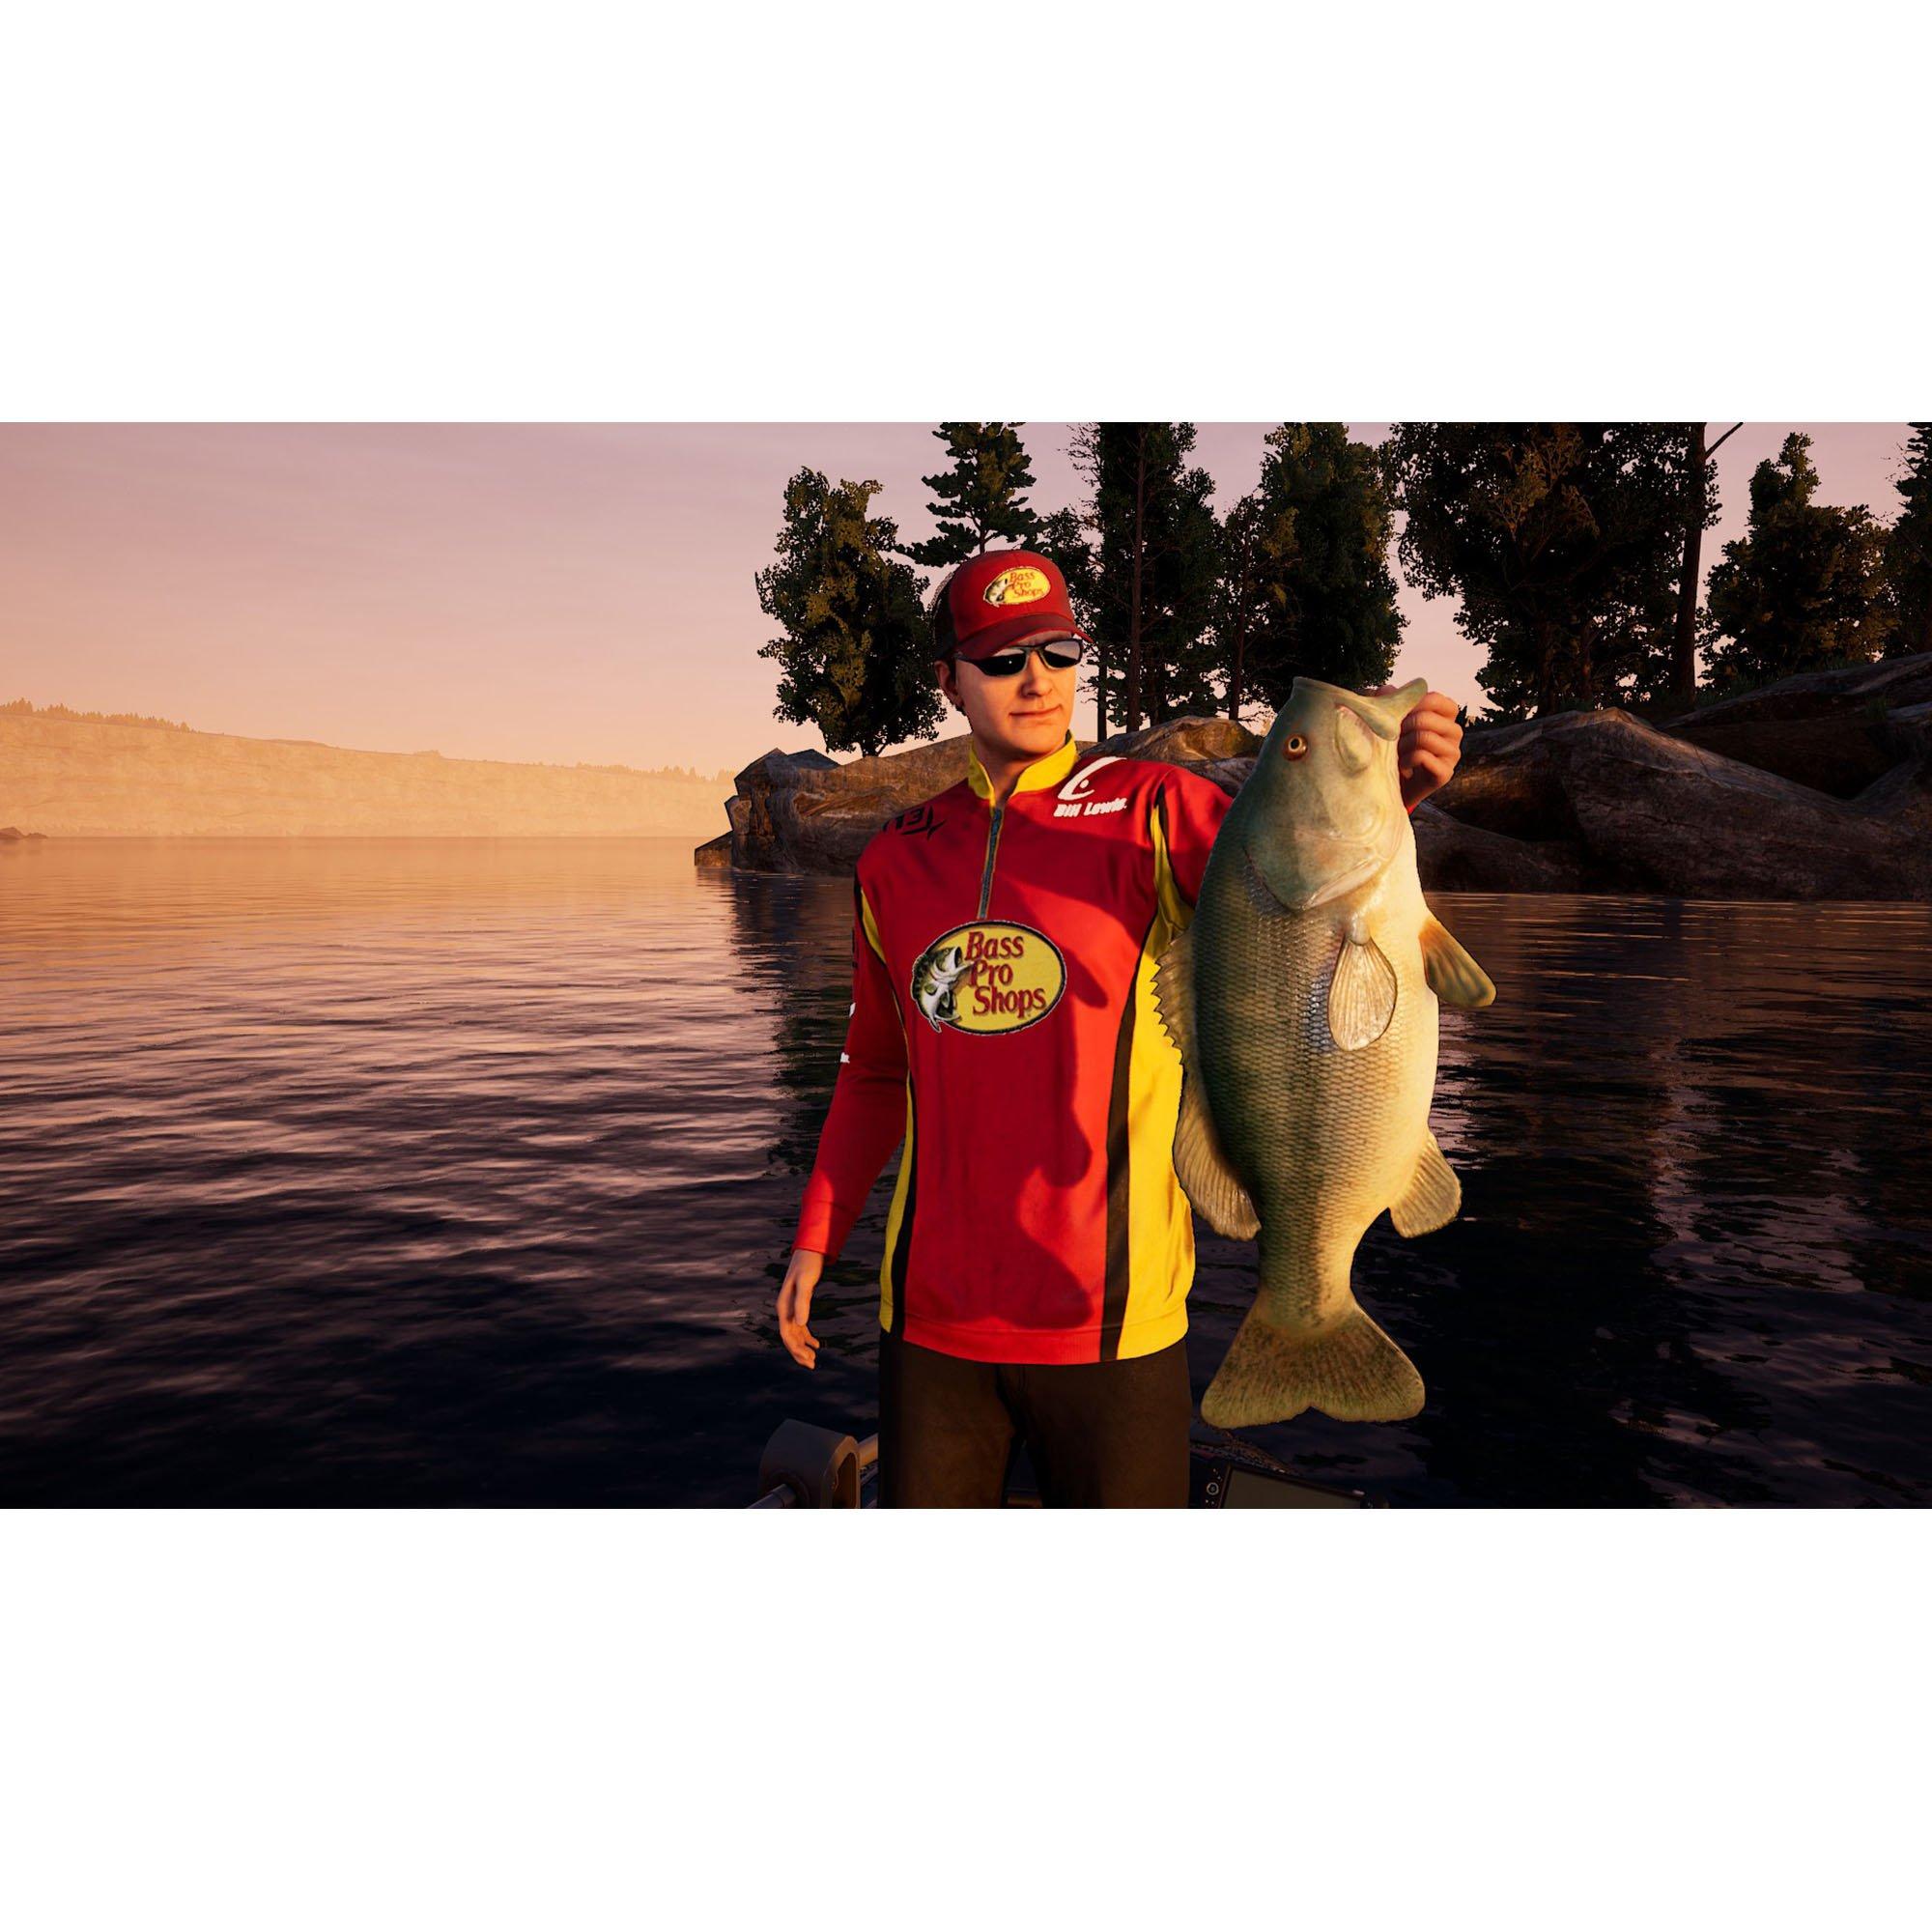 Bass Pro Shops Fishing World (輸入版:北米) - PS4: Video Games 